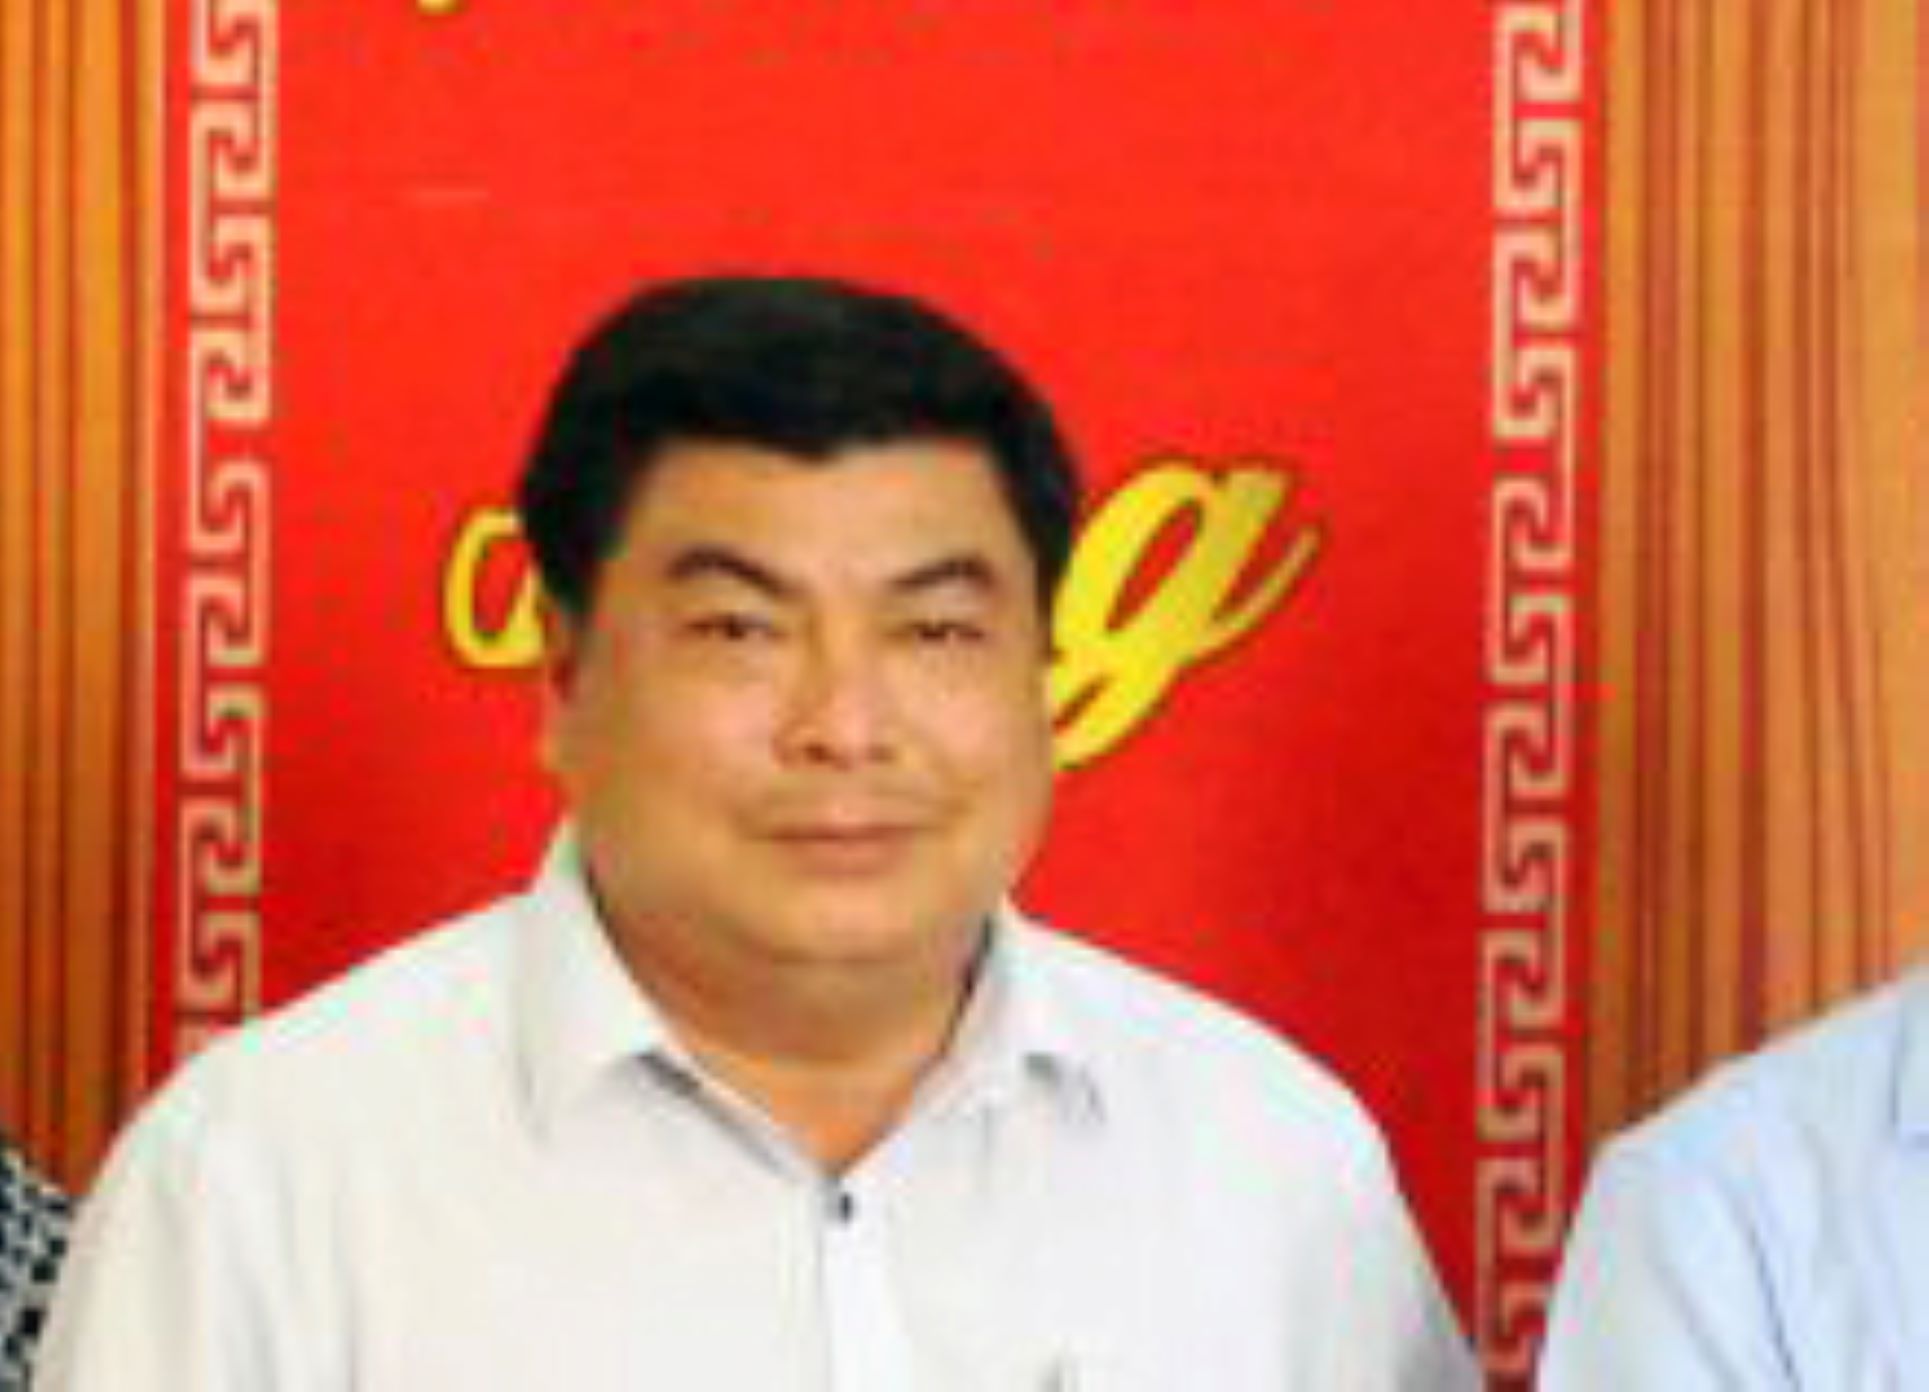 Nguyễn Bảo Sinh - Phó Chủ tịch UBND TP Long Xuyên trước thời điểm bị cơ quan điều tra khởi tố, bắt giam. Ảnh: Thanh Mai